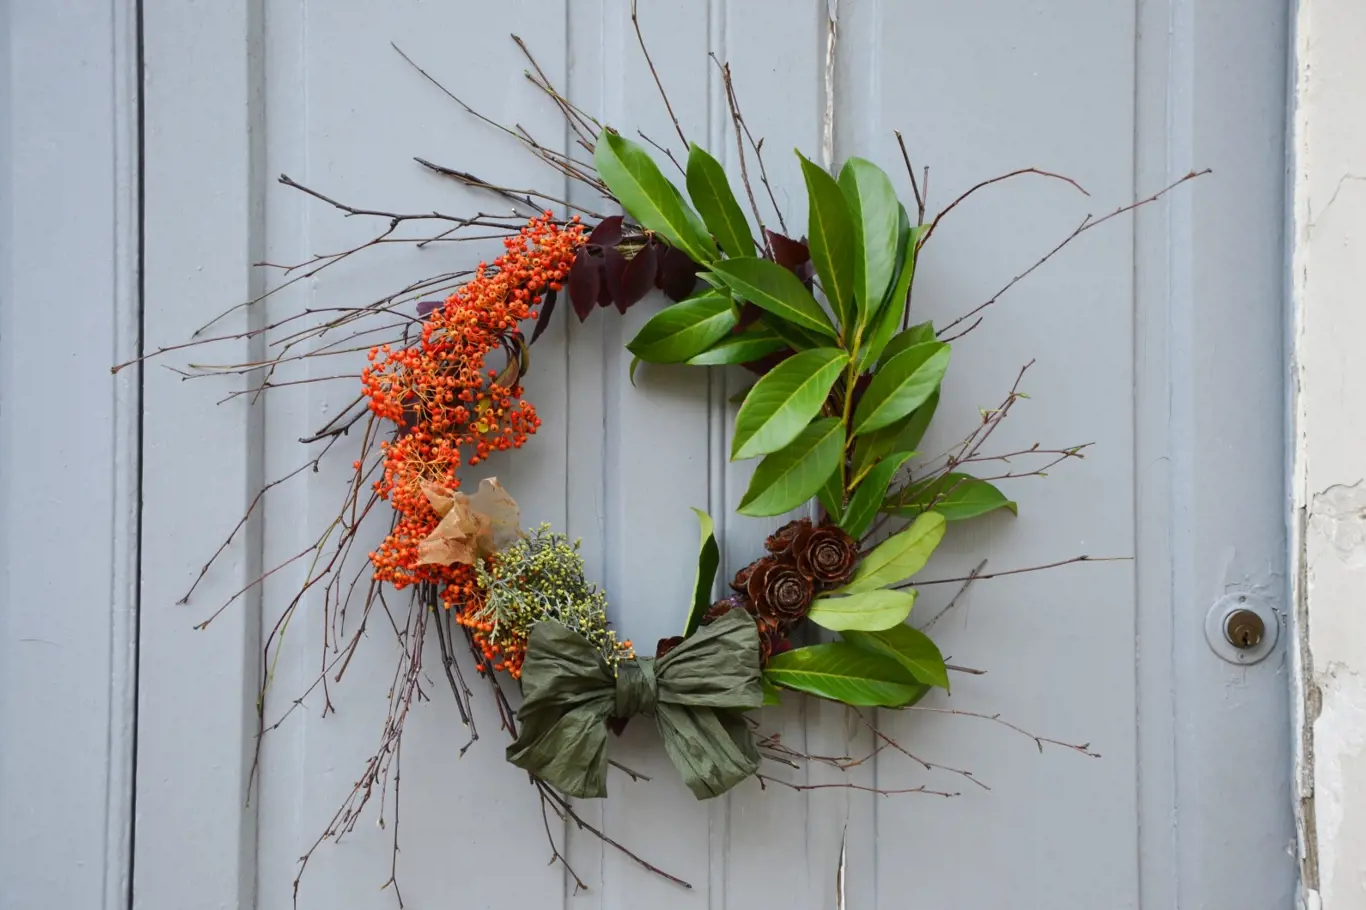 Barevný podzimní věnec je krásnou dekorací na dveře